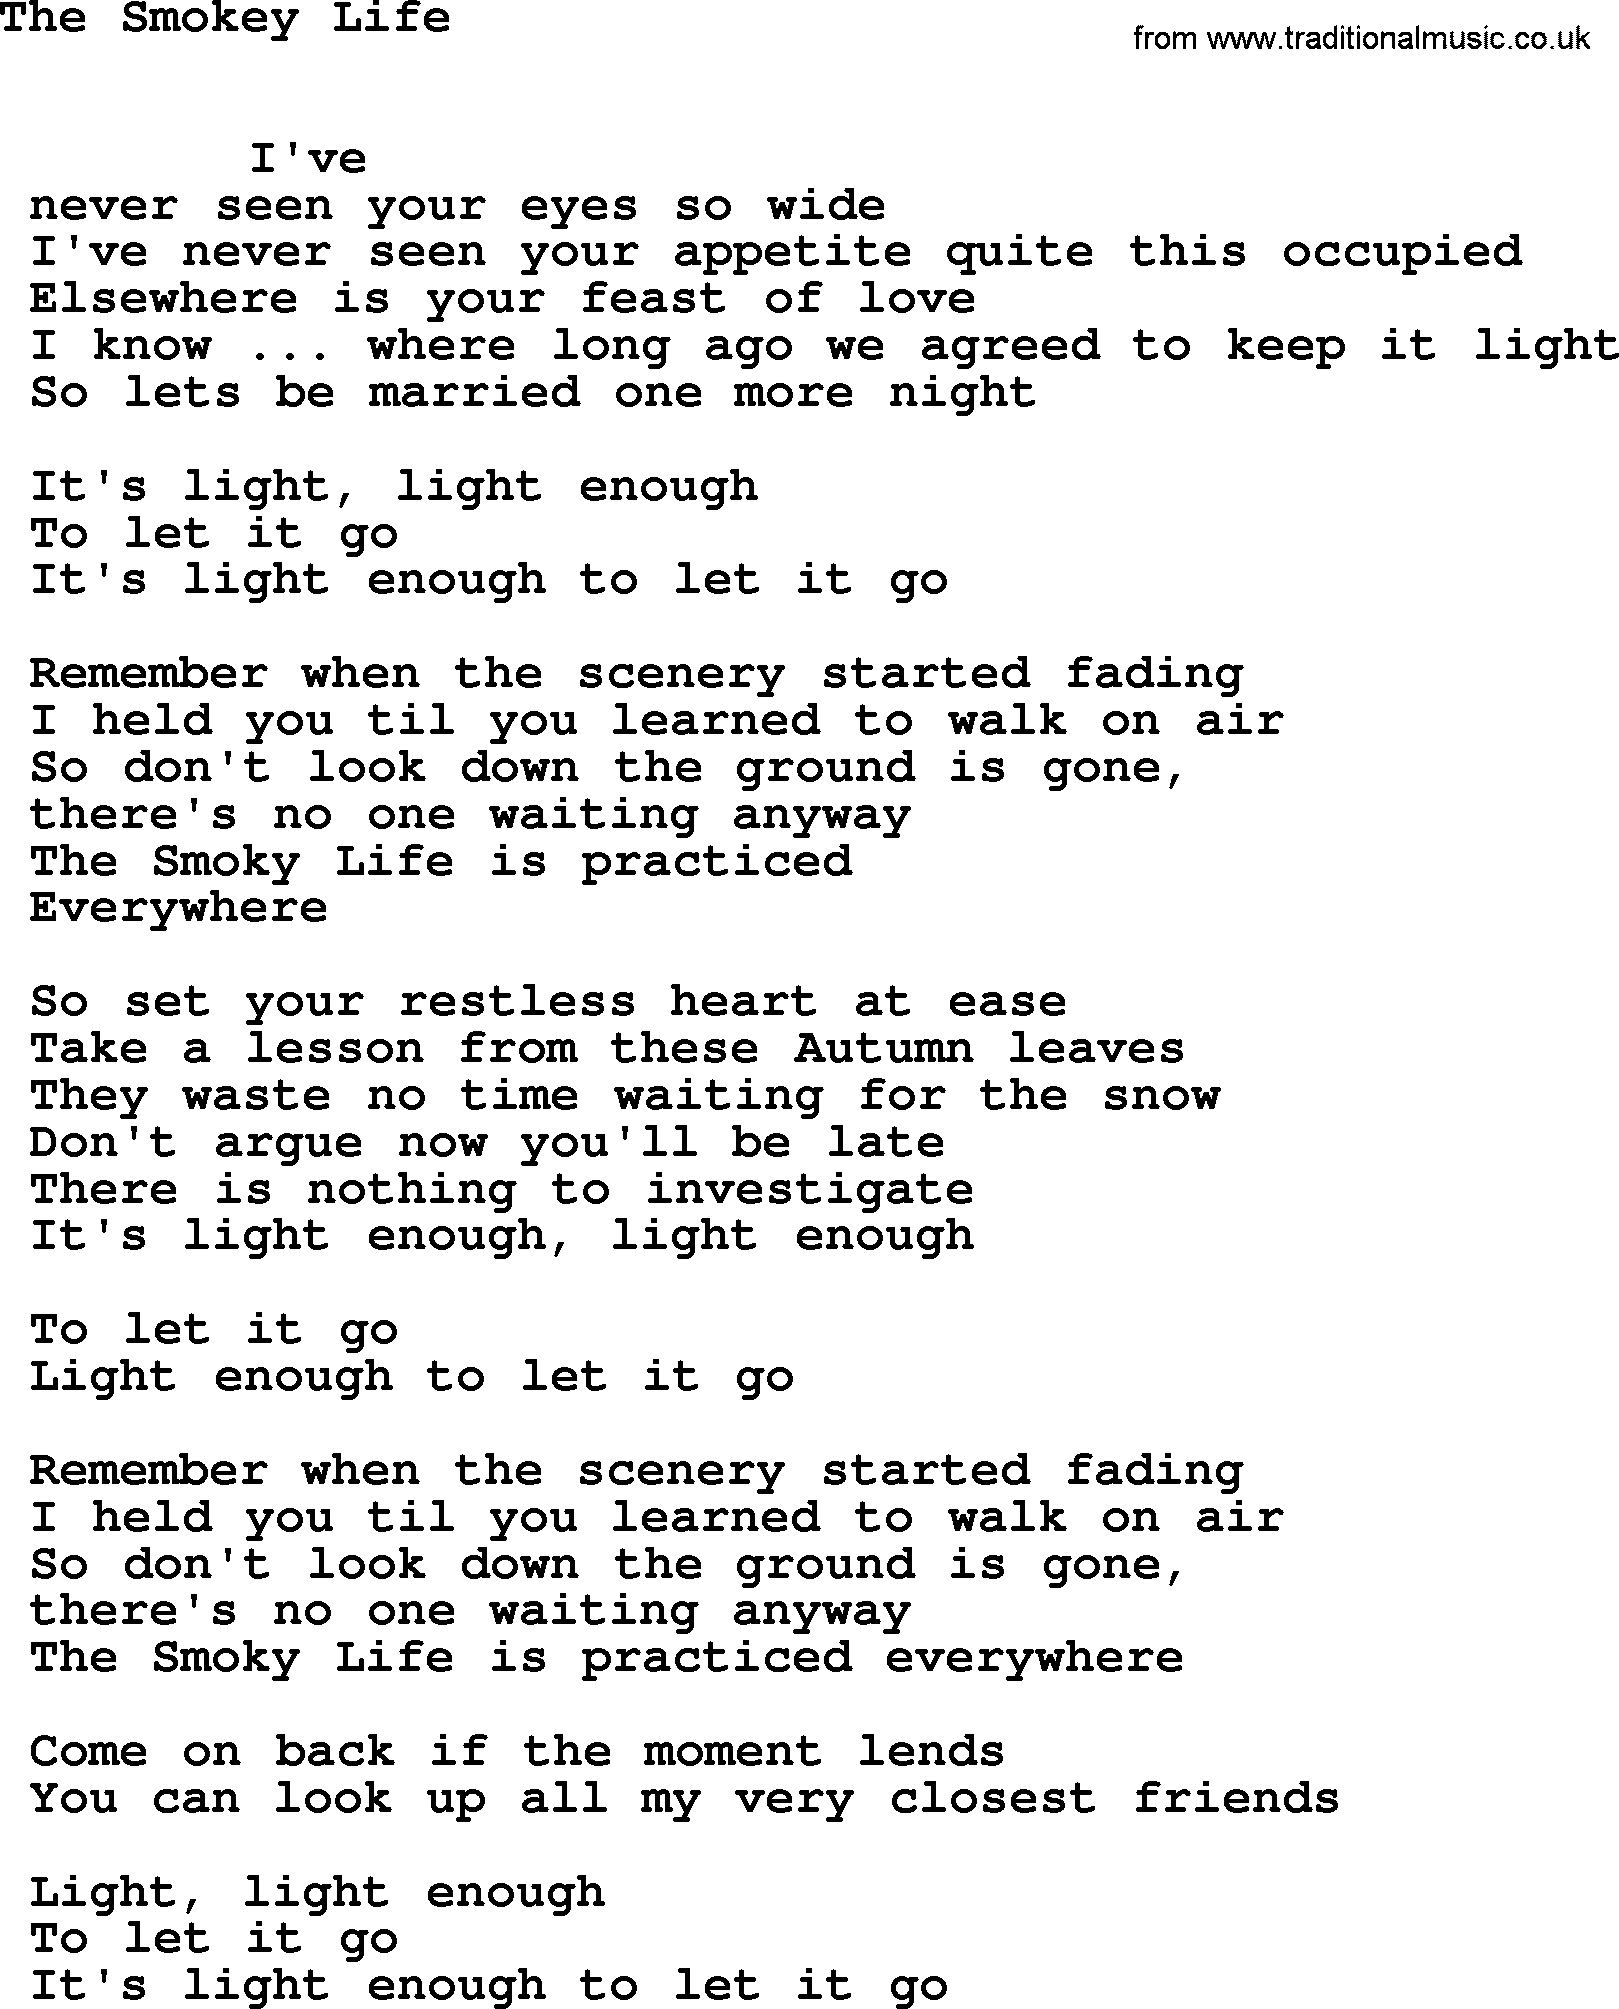 Leonard Cohen song Smokey Life-leonard-cohen.txt lyrics